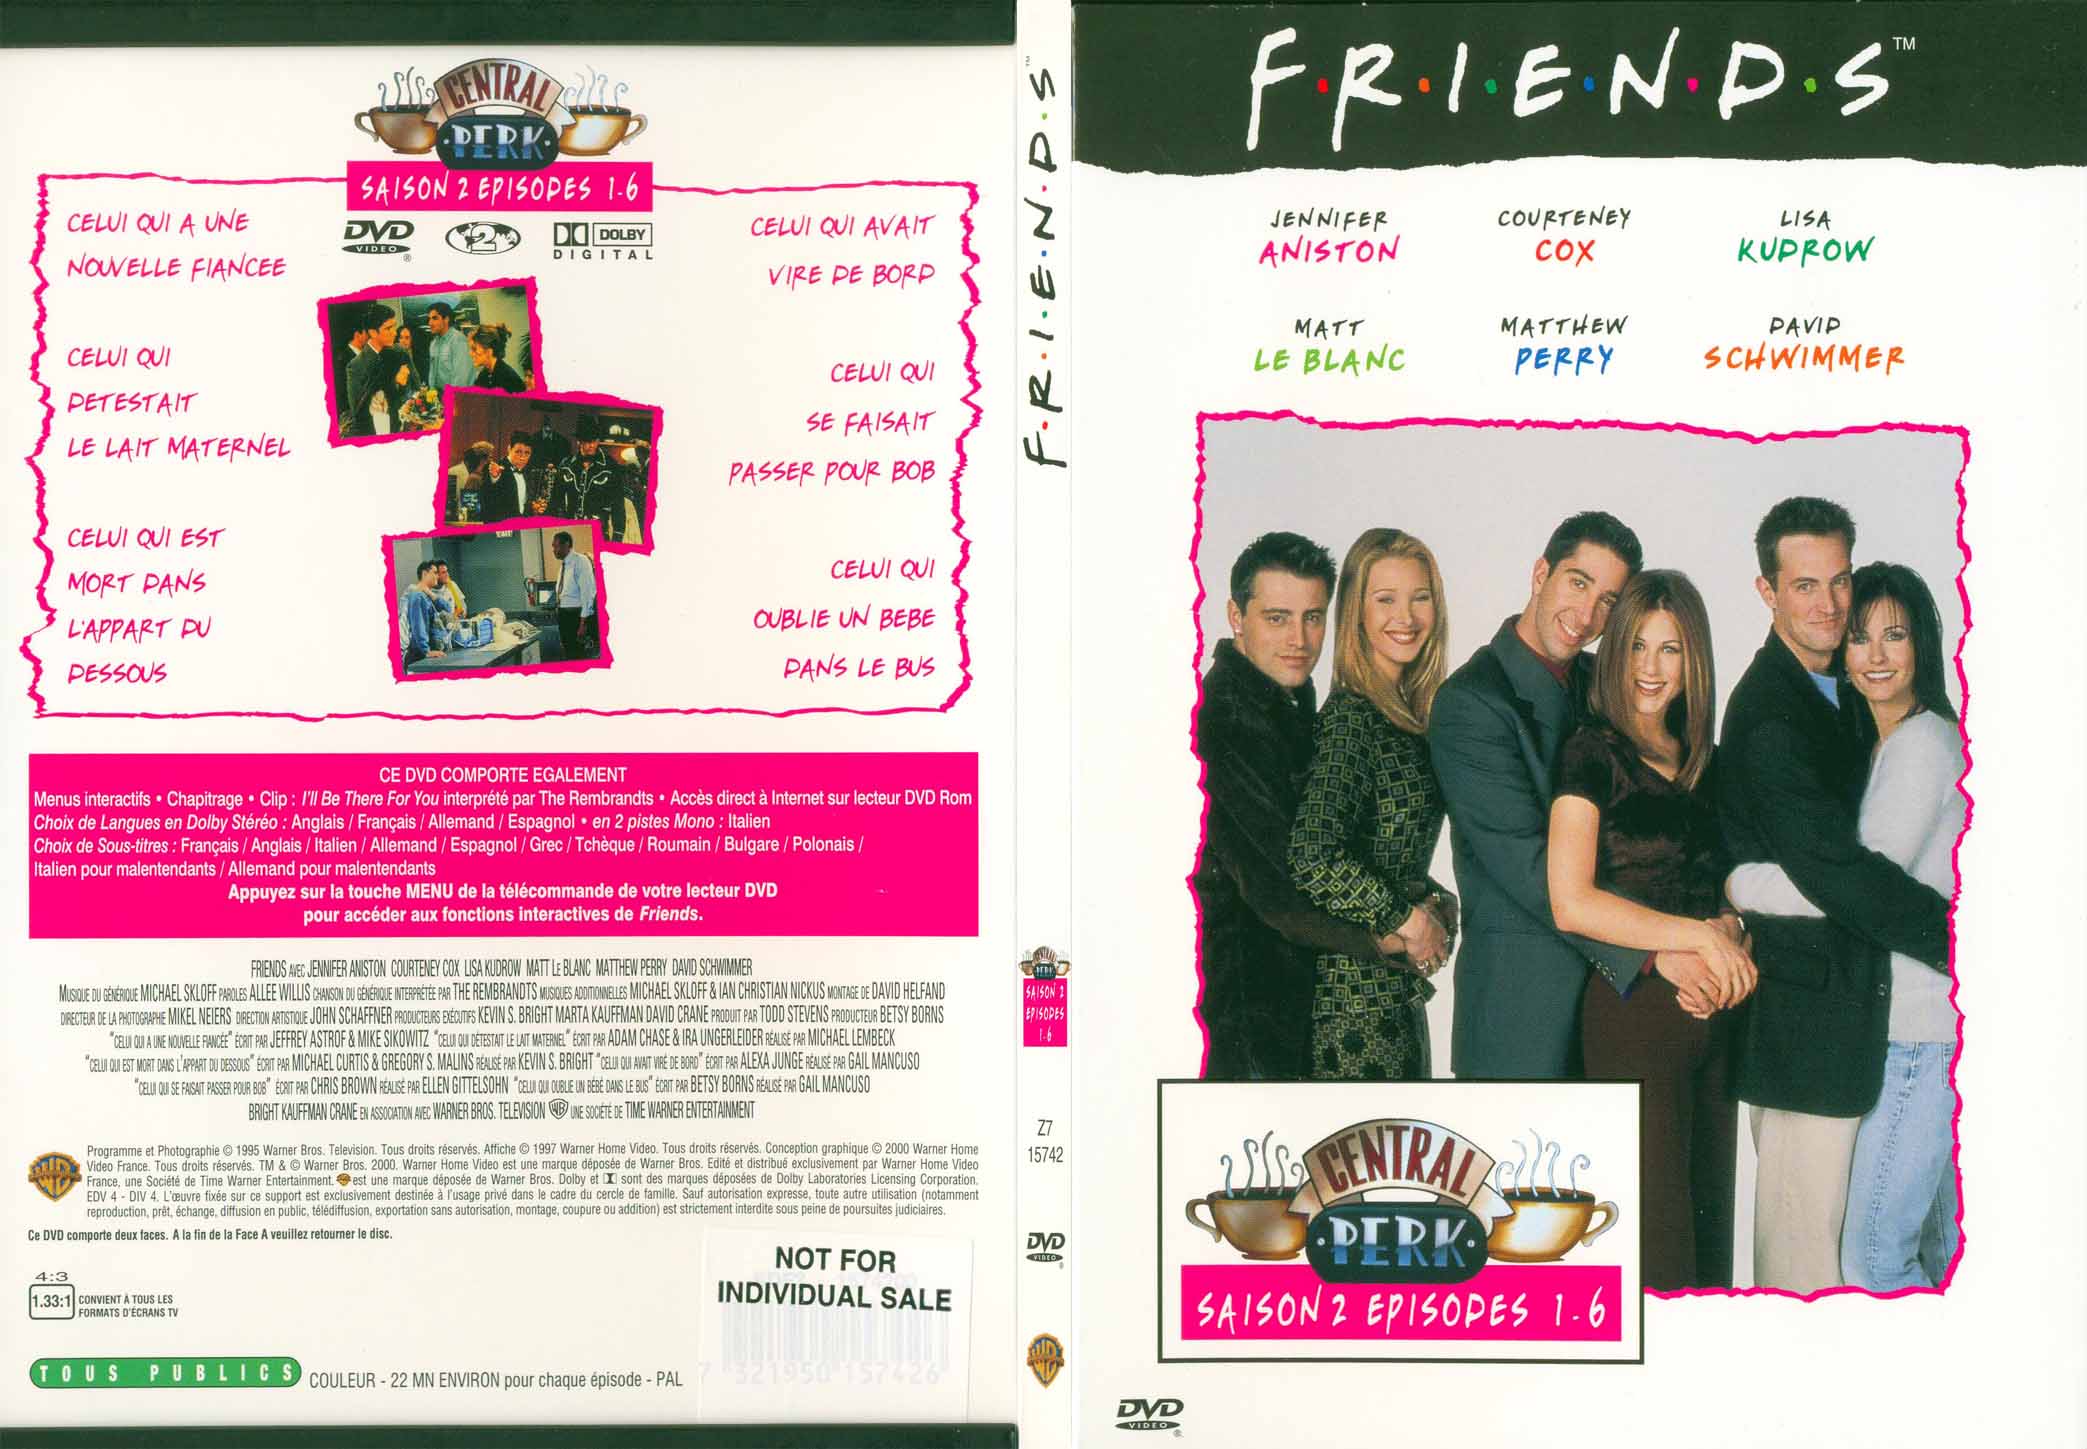 Jaquette DVD Friends saison 2 dvd 1 - SLIM